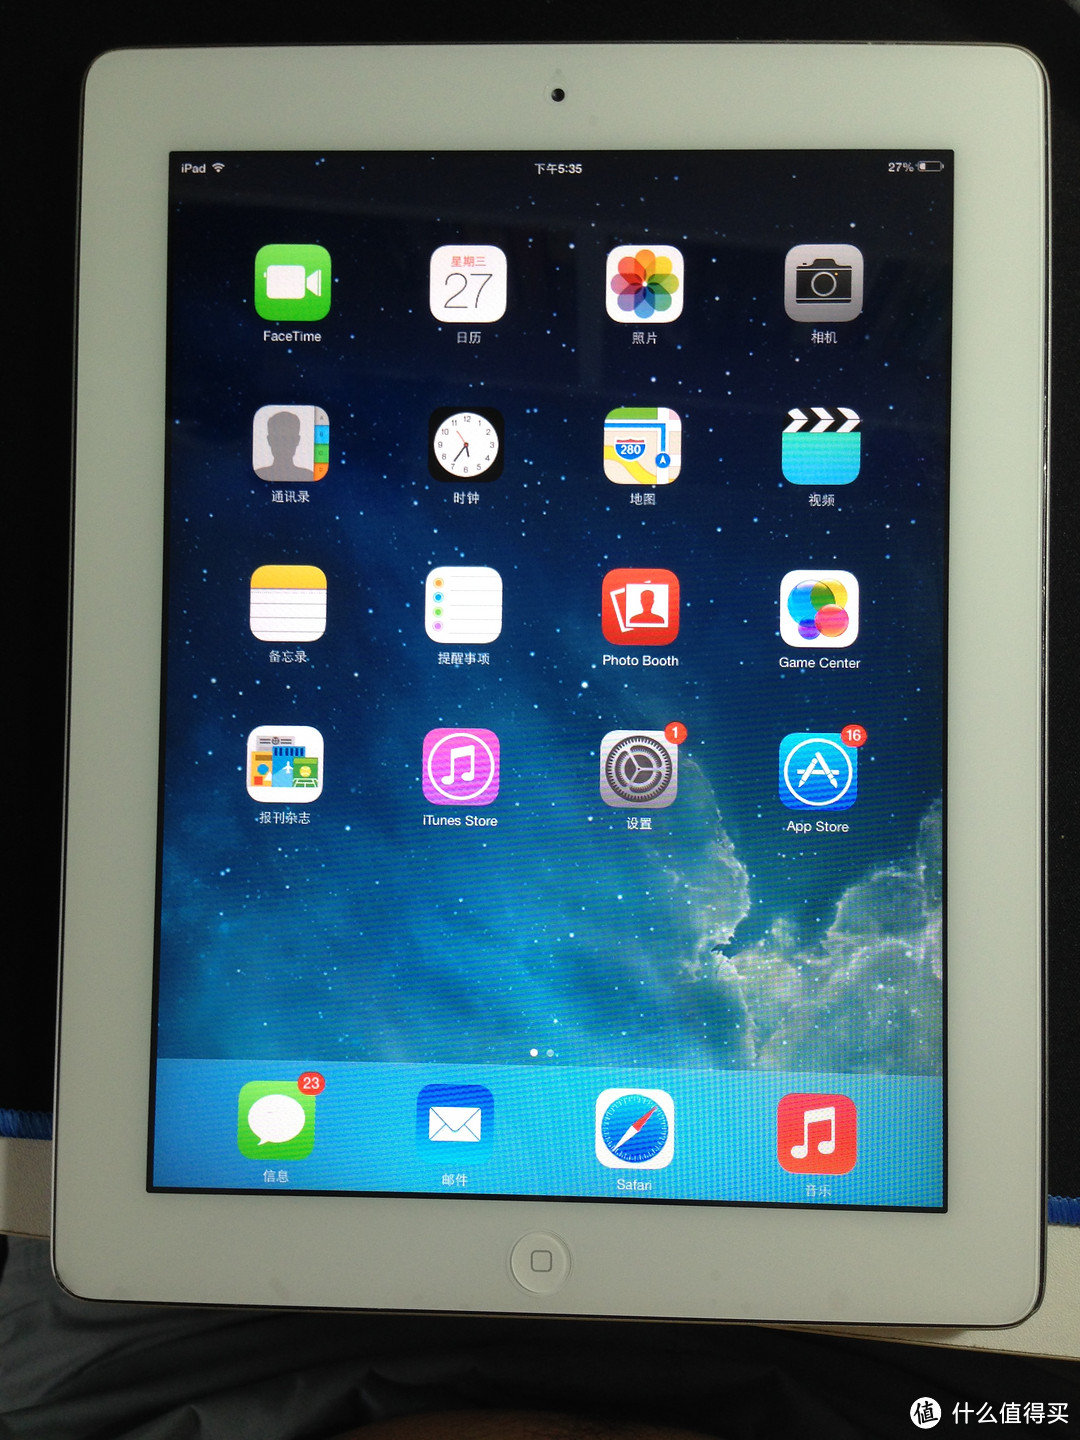 自己动手丰衣足食：iPad2花屏后更换原装外屏